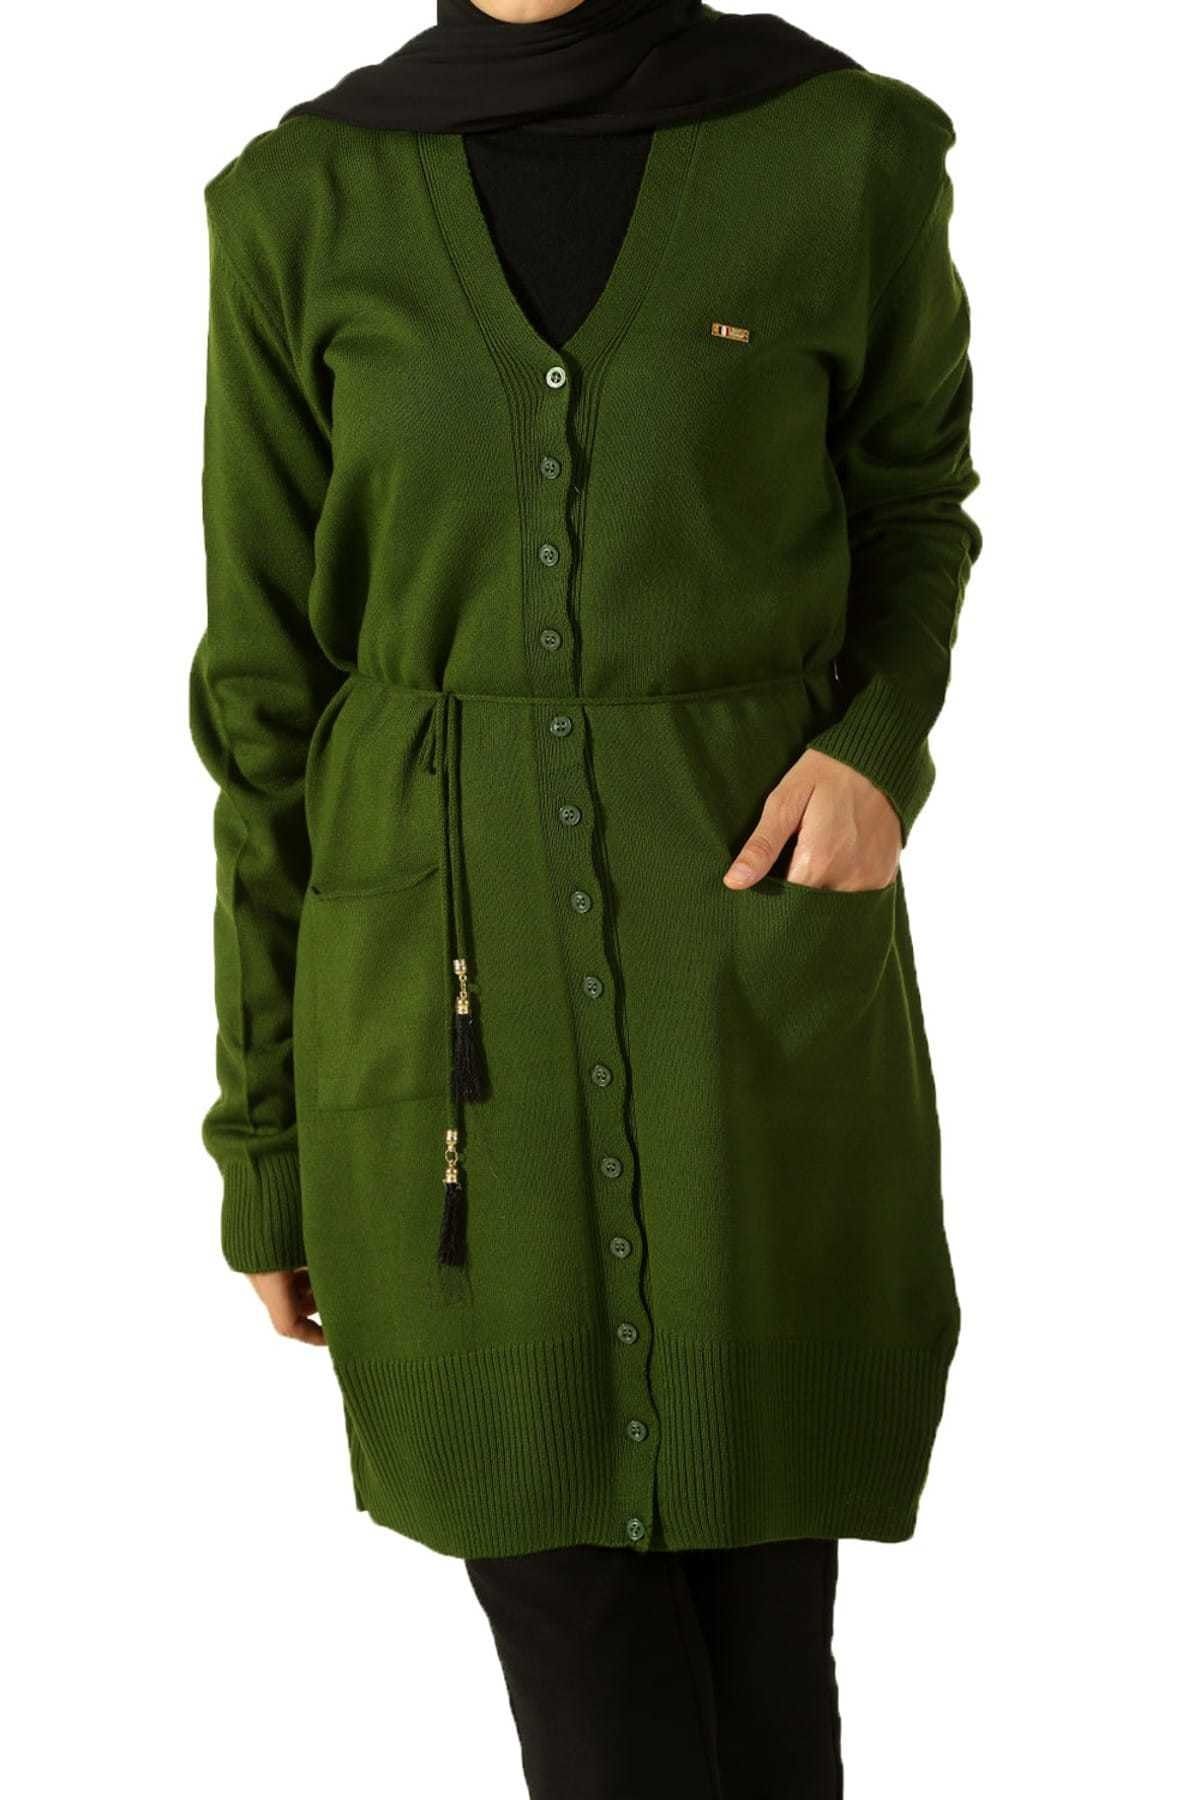 ALLDAY Kadın Yeşil Düğmeli Kuşaklı Triko Hırka TE9189